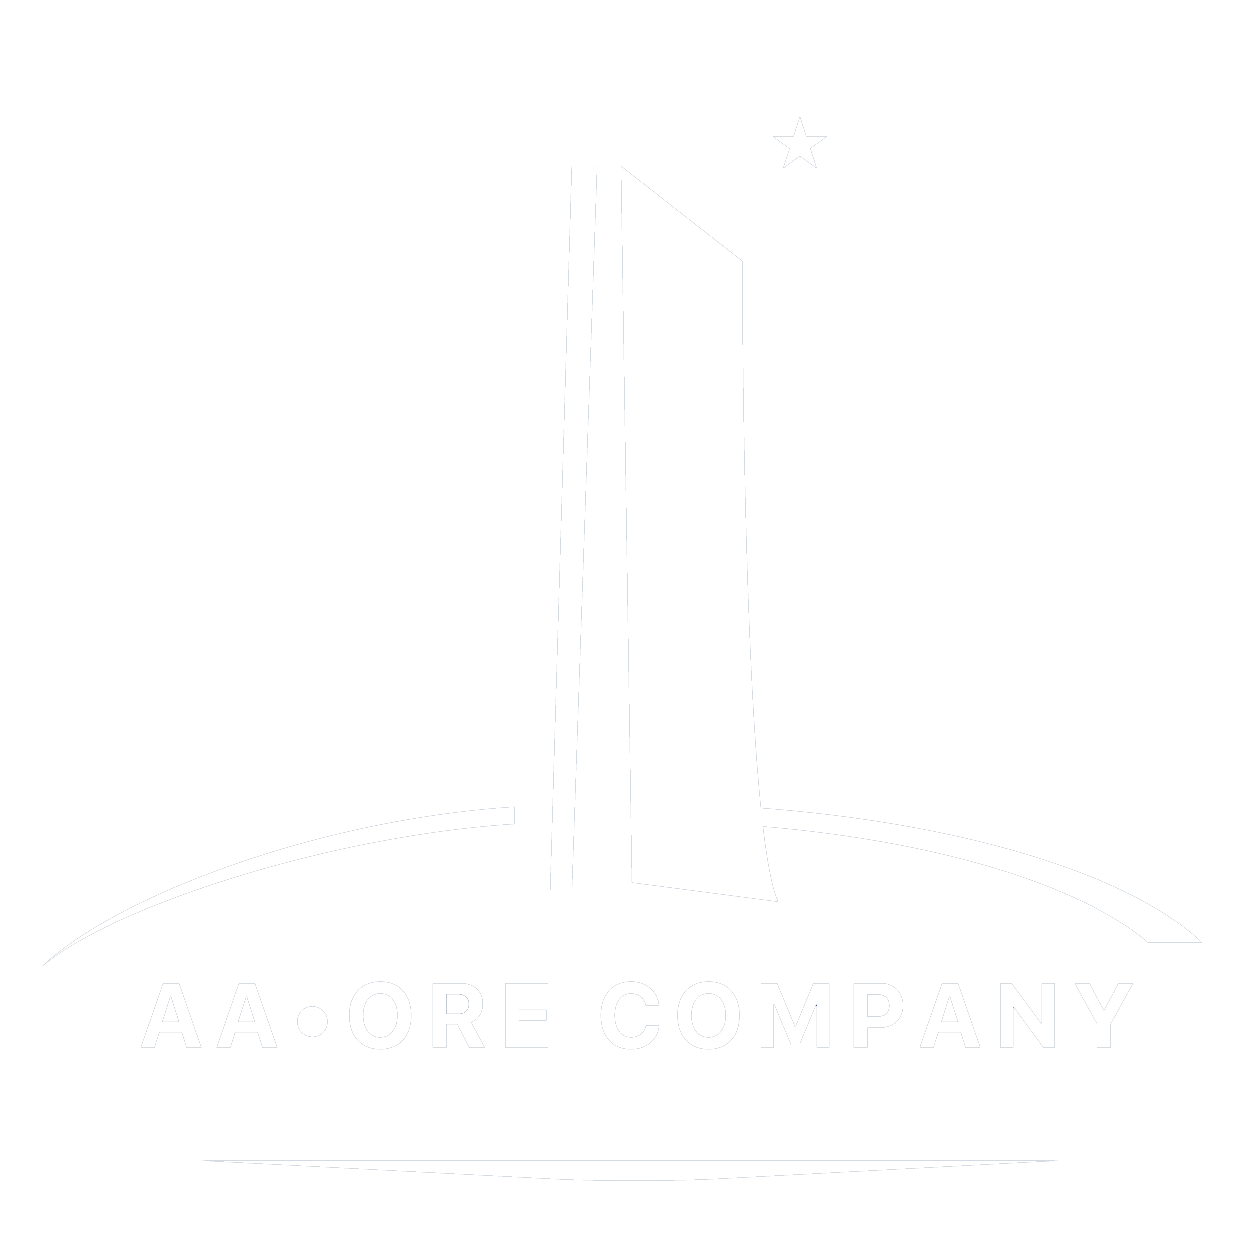 aa-ore-company.opticelbadr.com